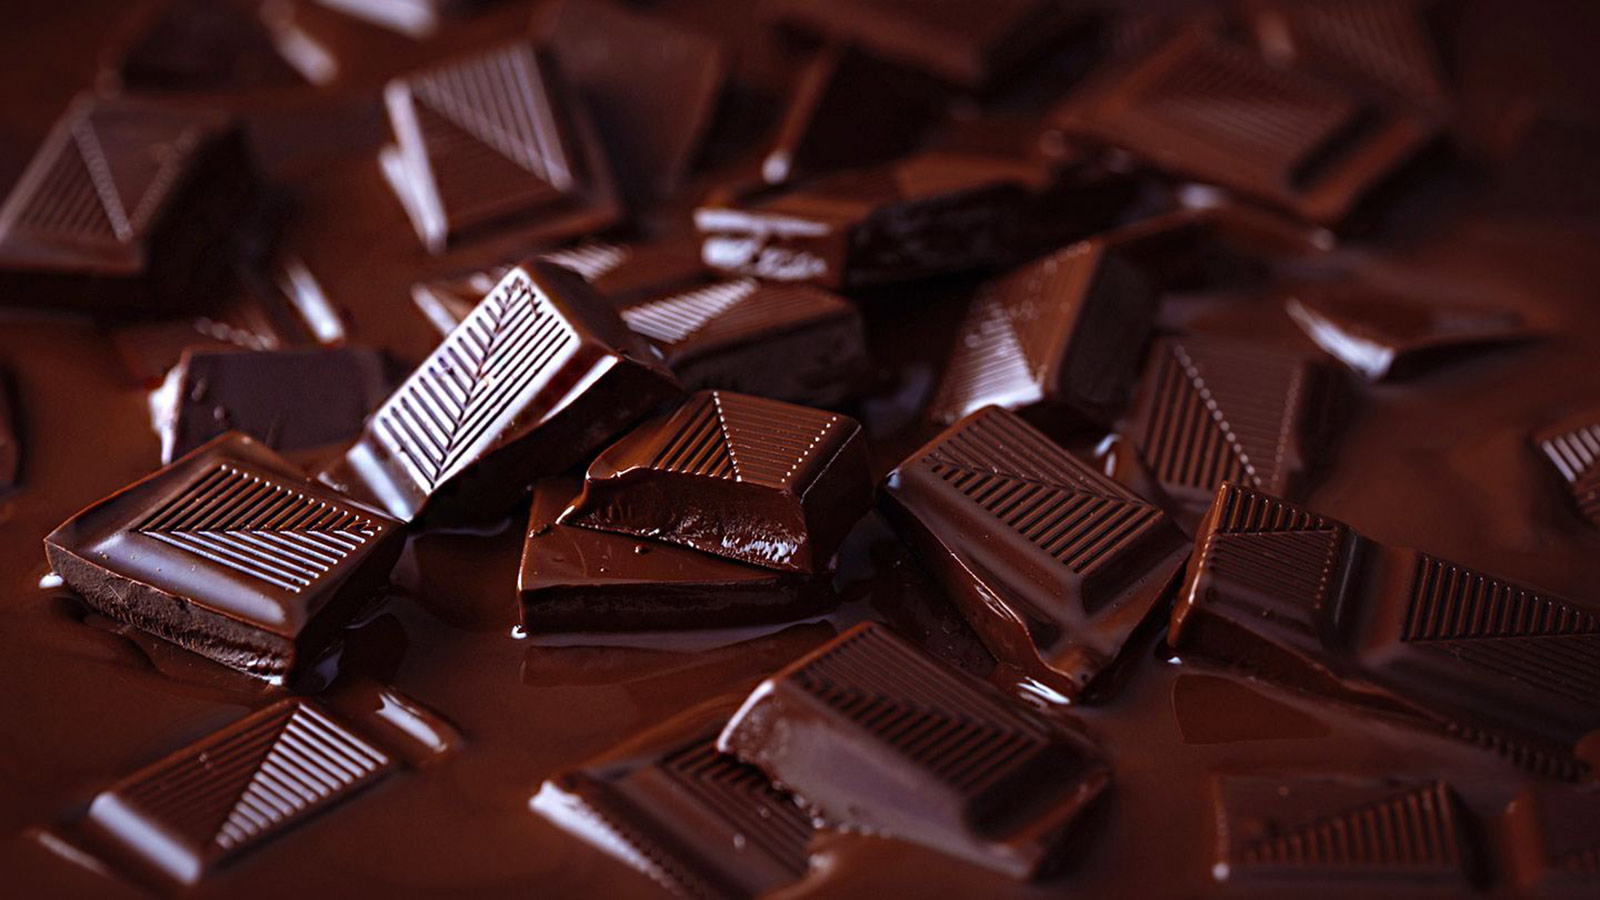  الشوكولاتة تقي من أمراض القلب والسرطان